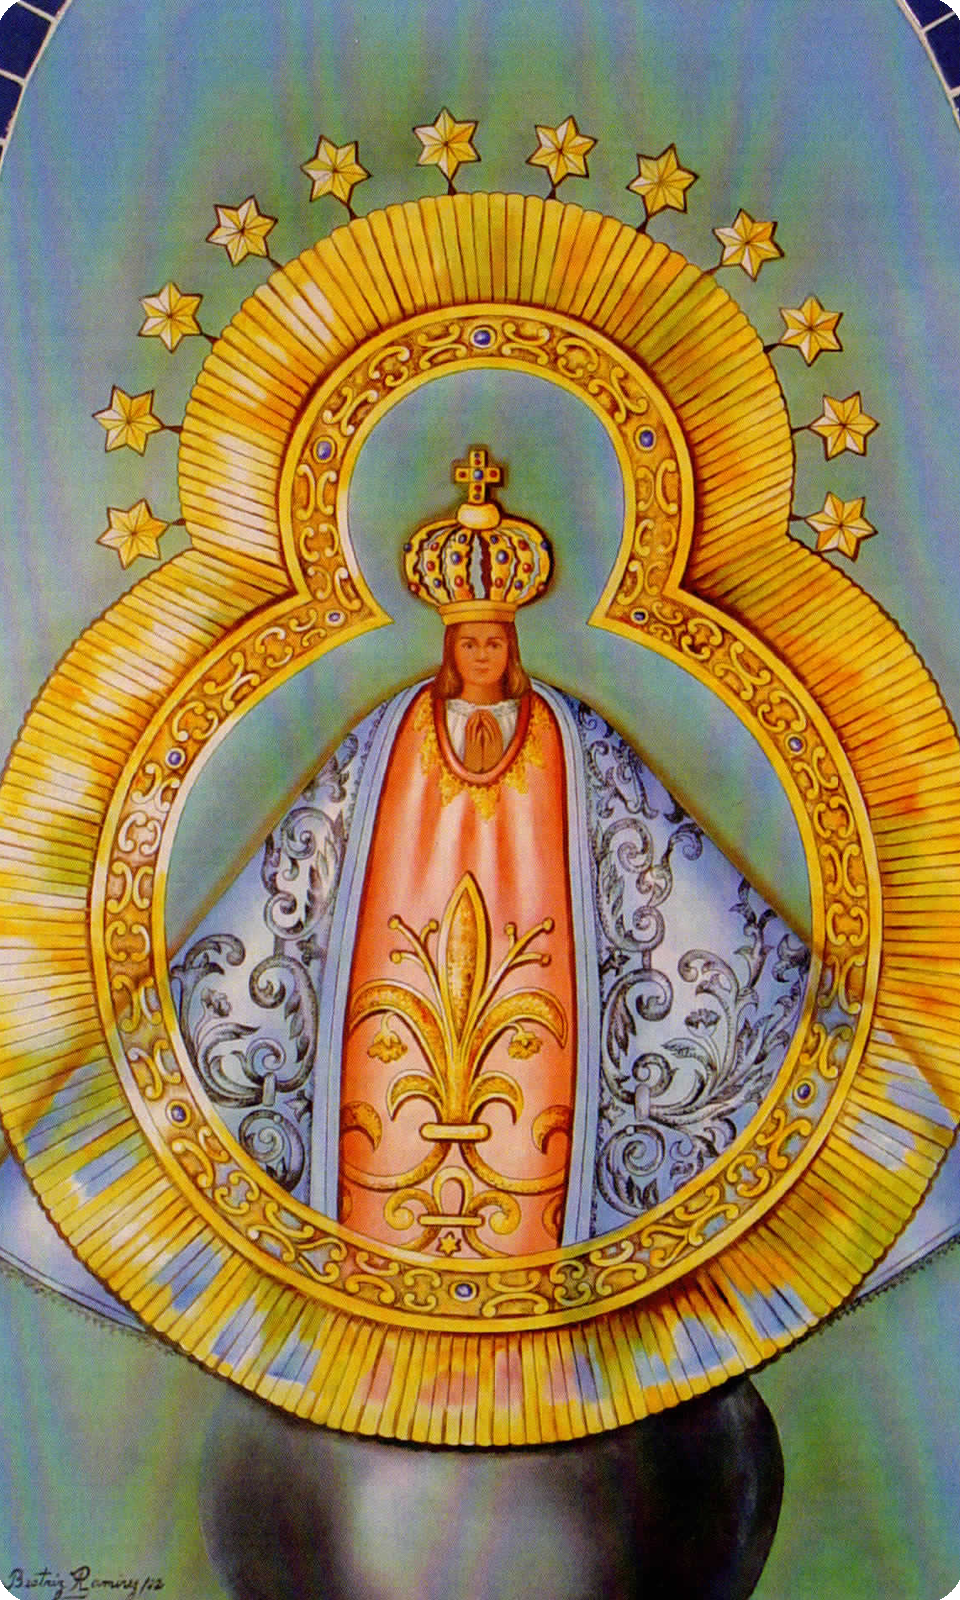 Nuestra Señora de Suyapa